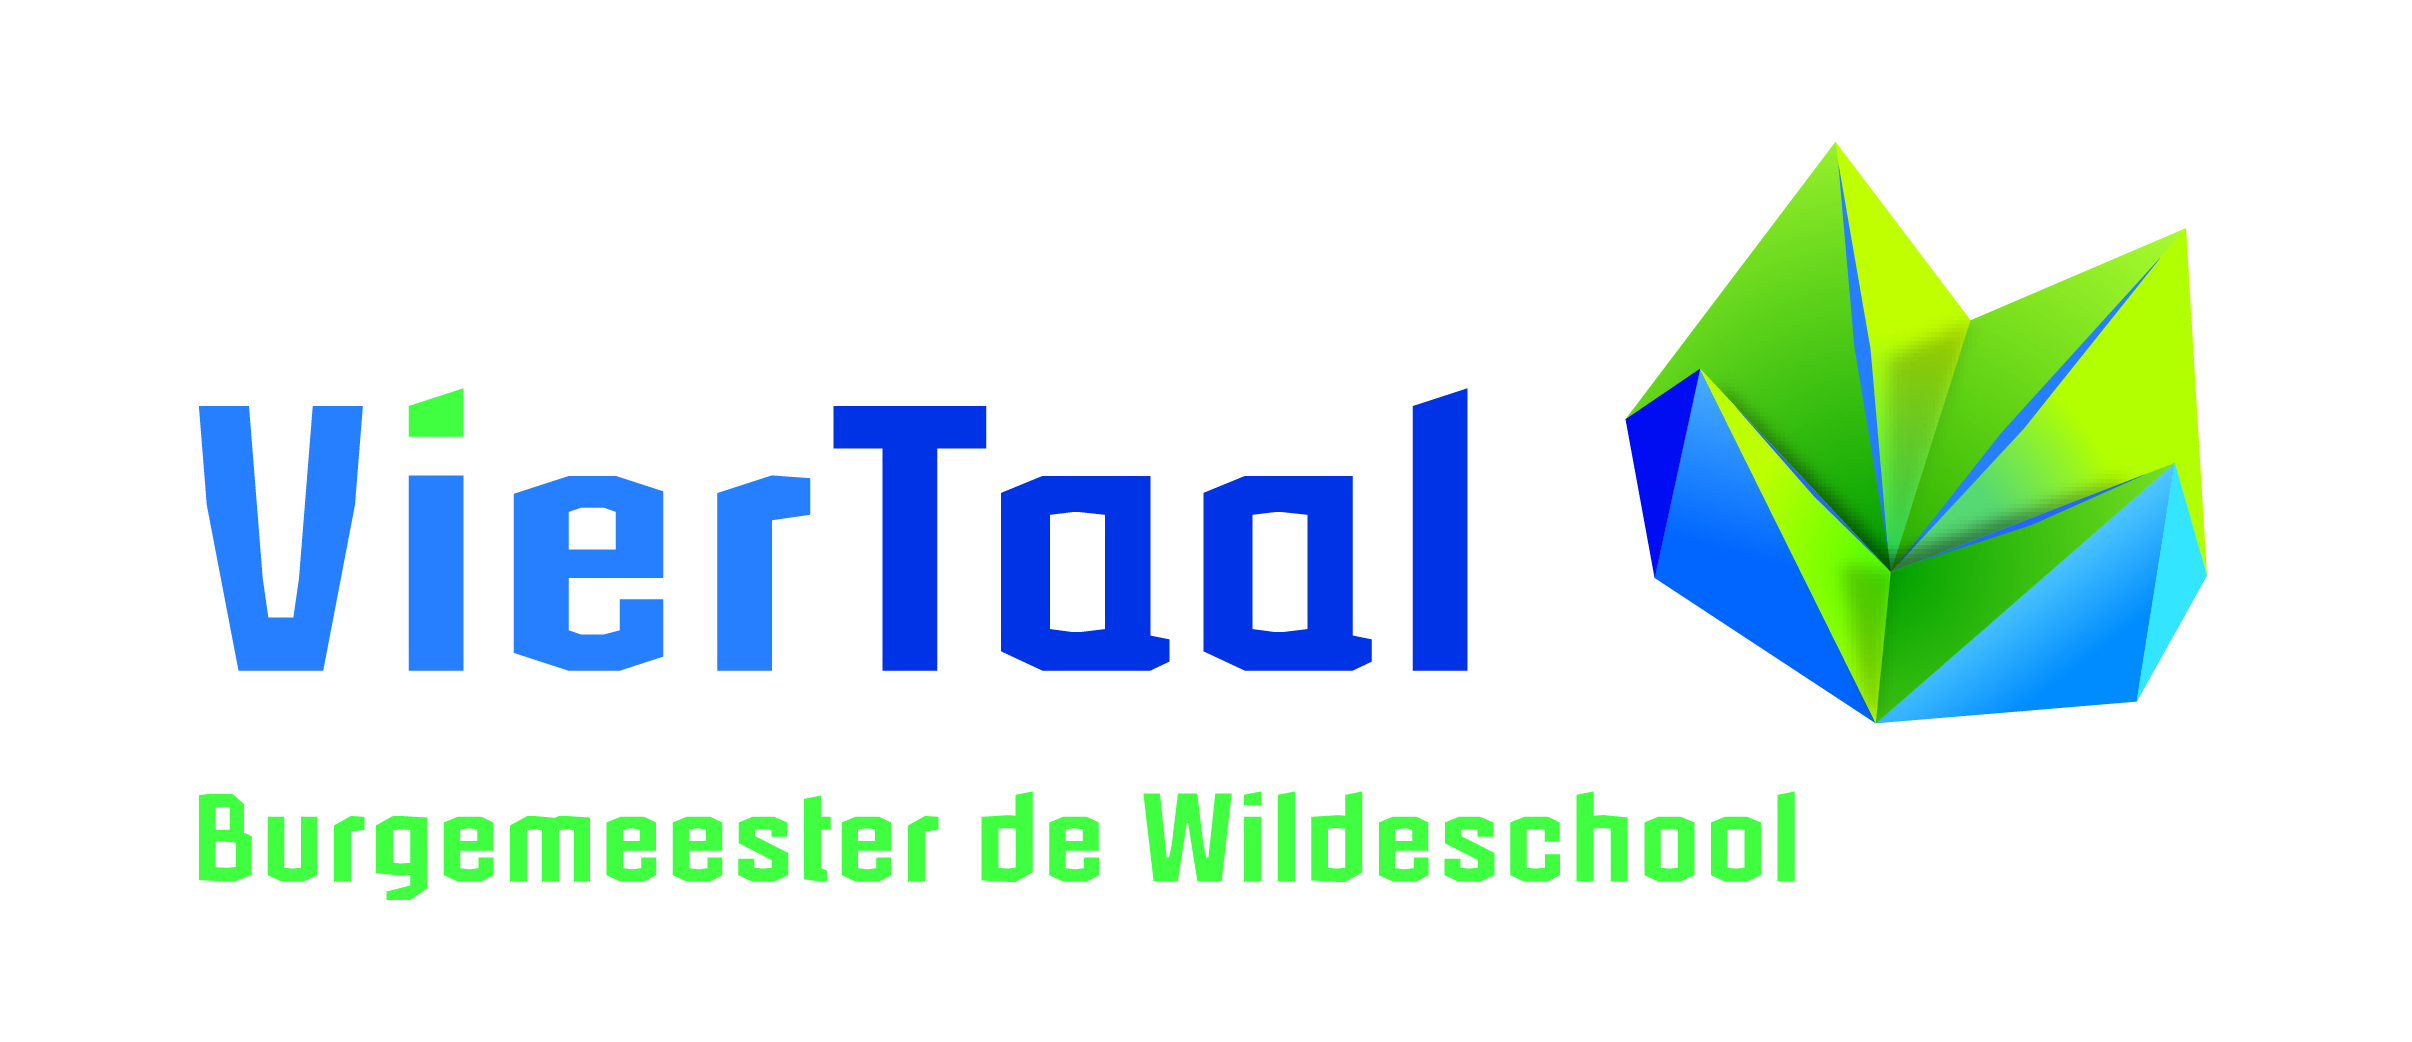 Logo Burgemeester de Wildeschool